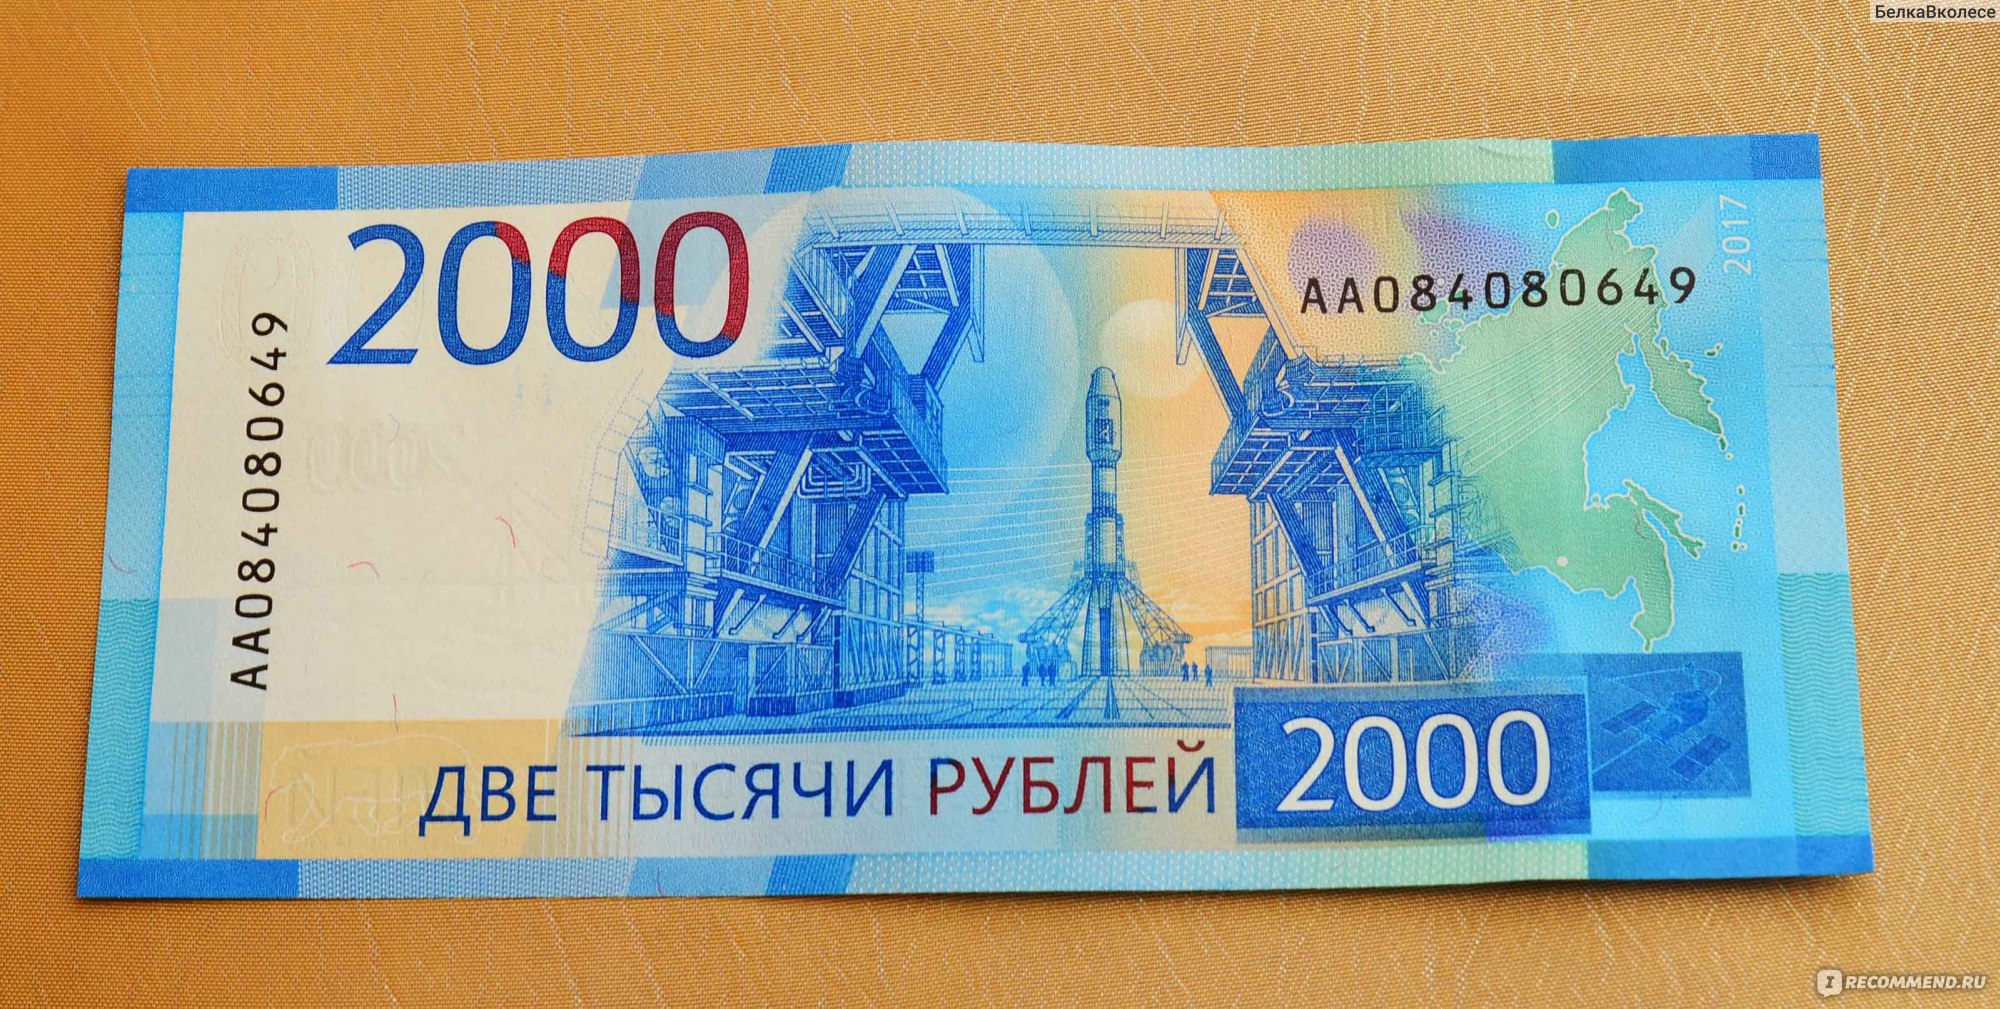 Купюра 2 руб. Купюра 2000 рублей. Банкнота 200 и 2000 рублей. 2000 Рублей бумажка. 200 Рублей и 2000 рублей.